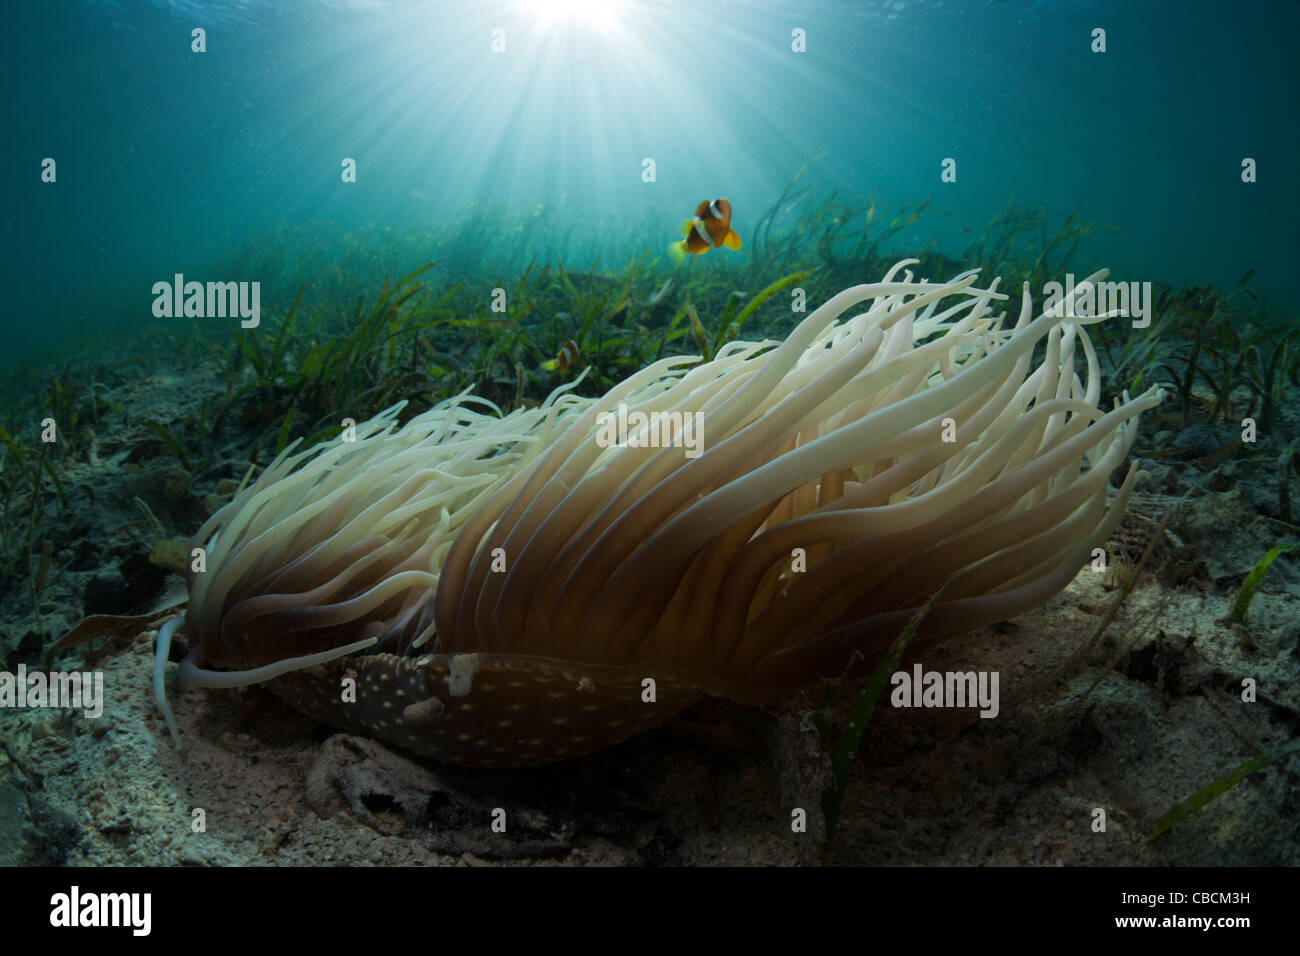 Cuoio anemone marittimo con Clarks Anemonefish nelle praterie di fanerogame Heteractis crispa Amphiprion clarki, Cenderawasih Bay Indonesia Foto Stock